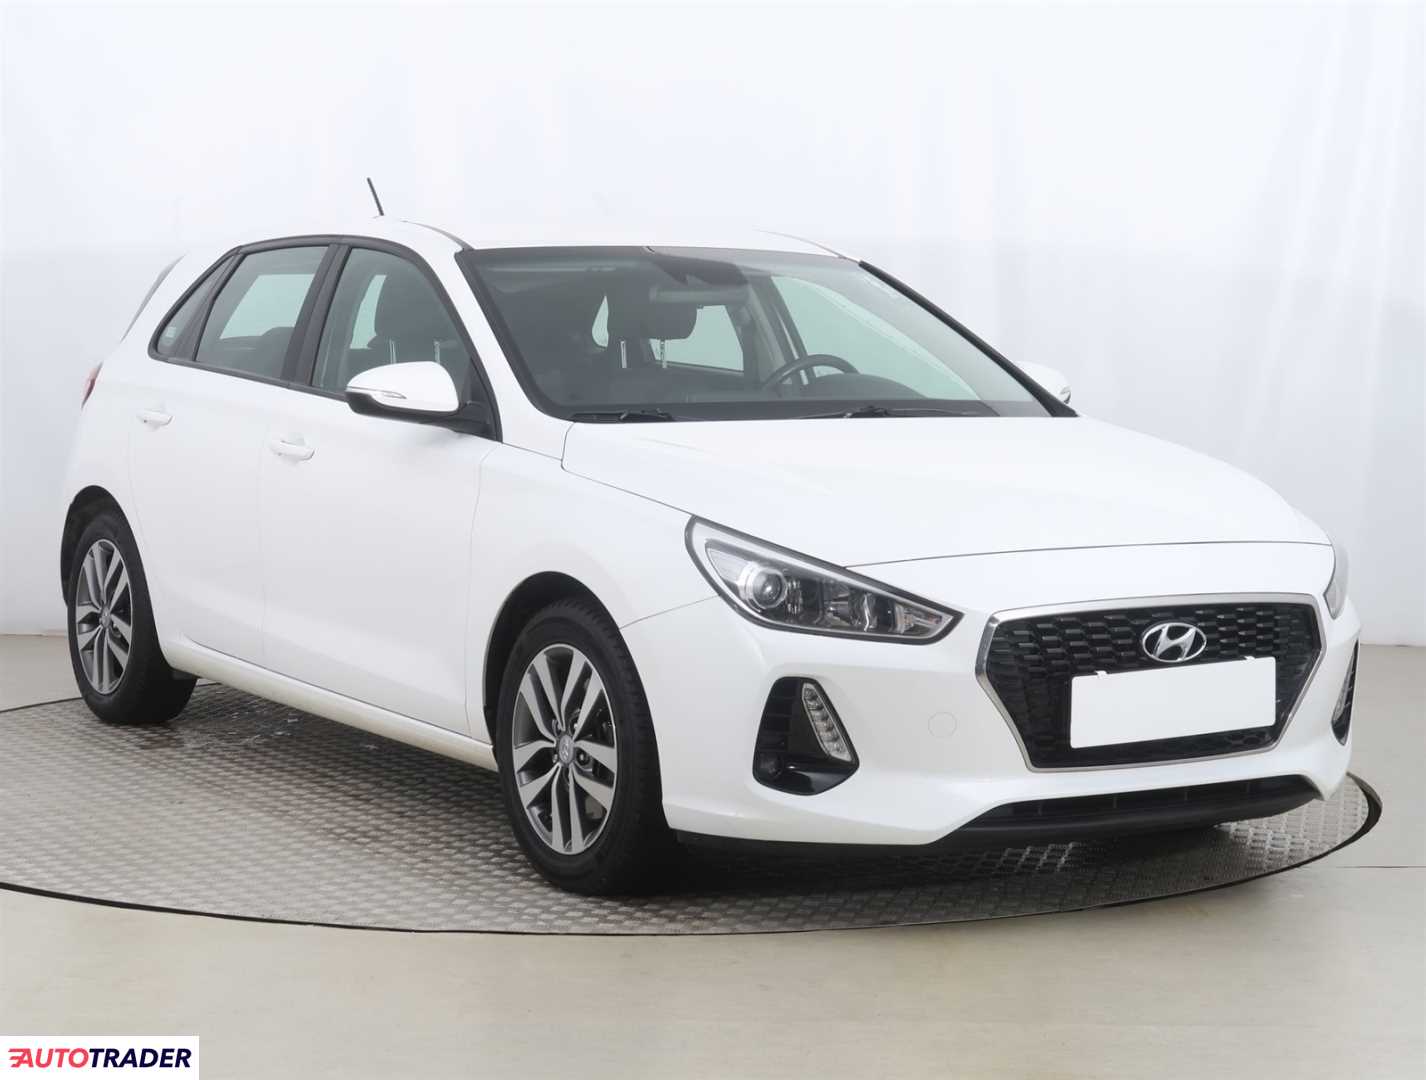 Hyundai i30 2017 1.4 97 KM